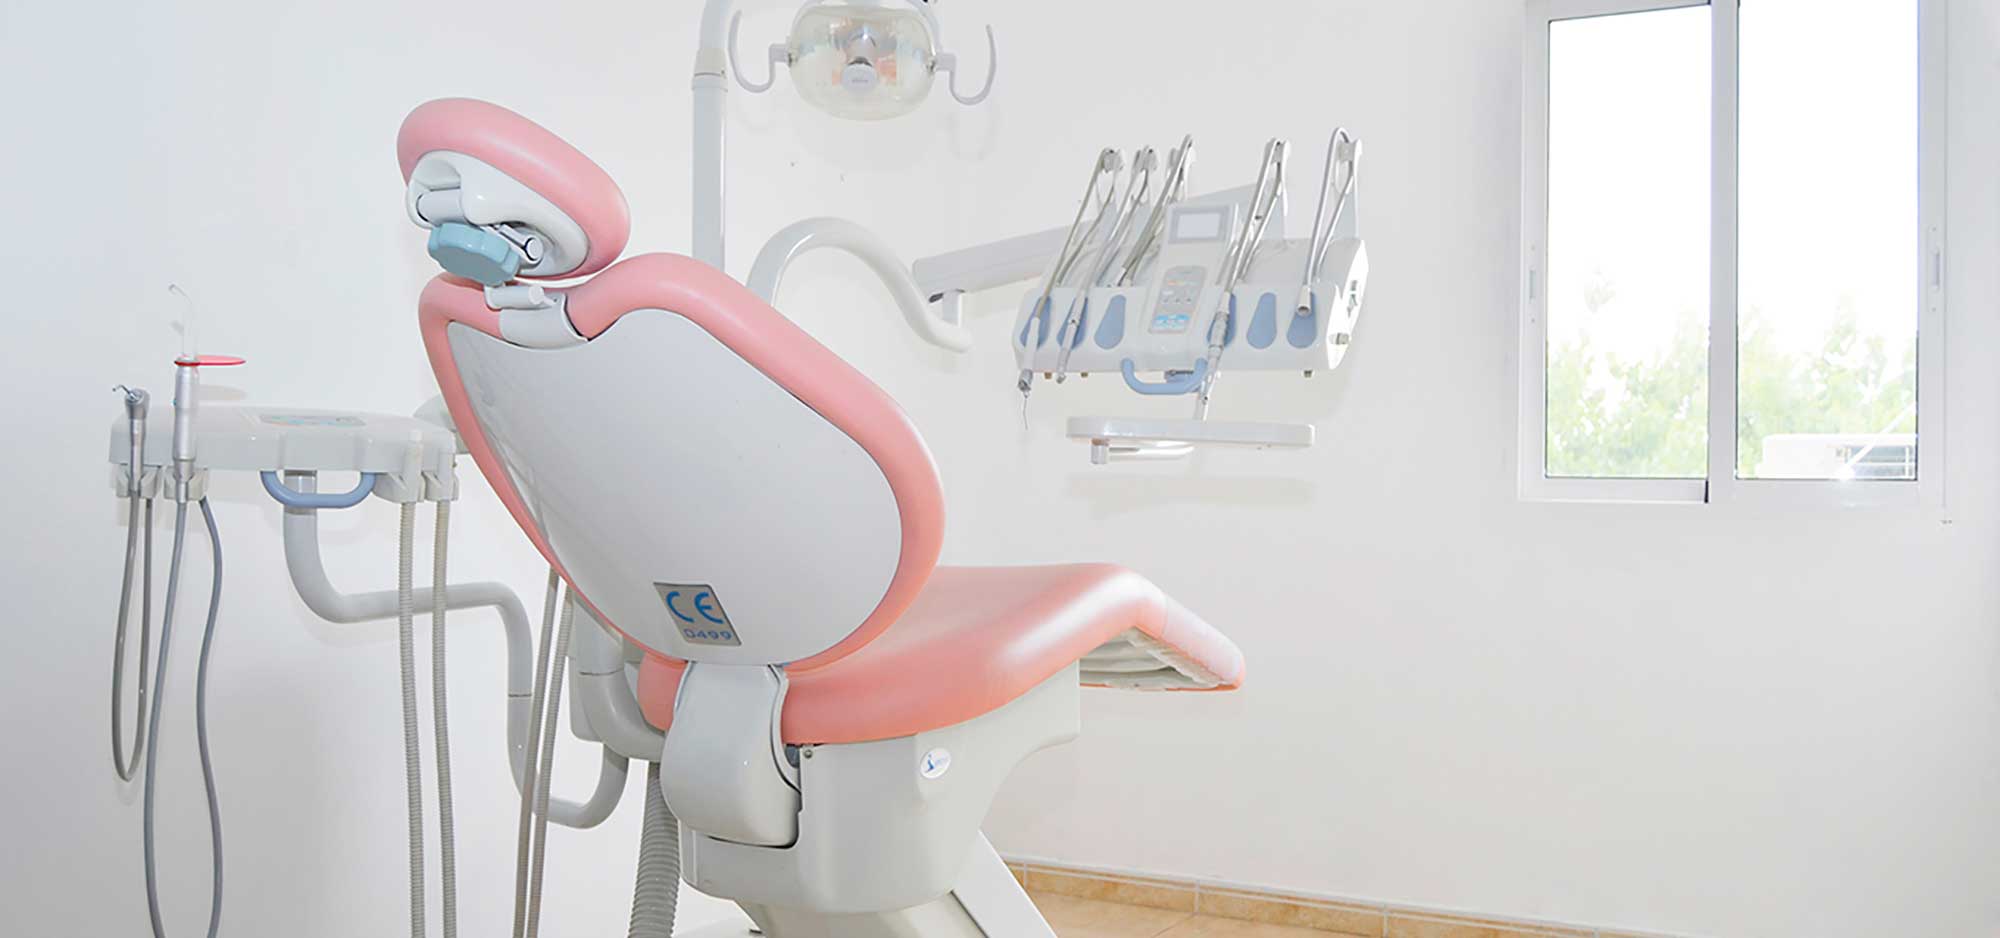 Imagen de las modernas instalaciones de la clínica odontológica Clínica Herrero. Tu dentista en Valencia